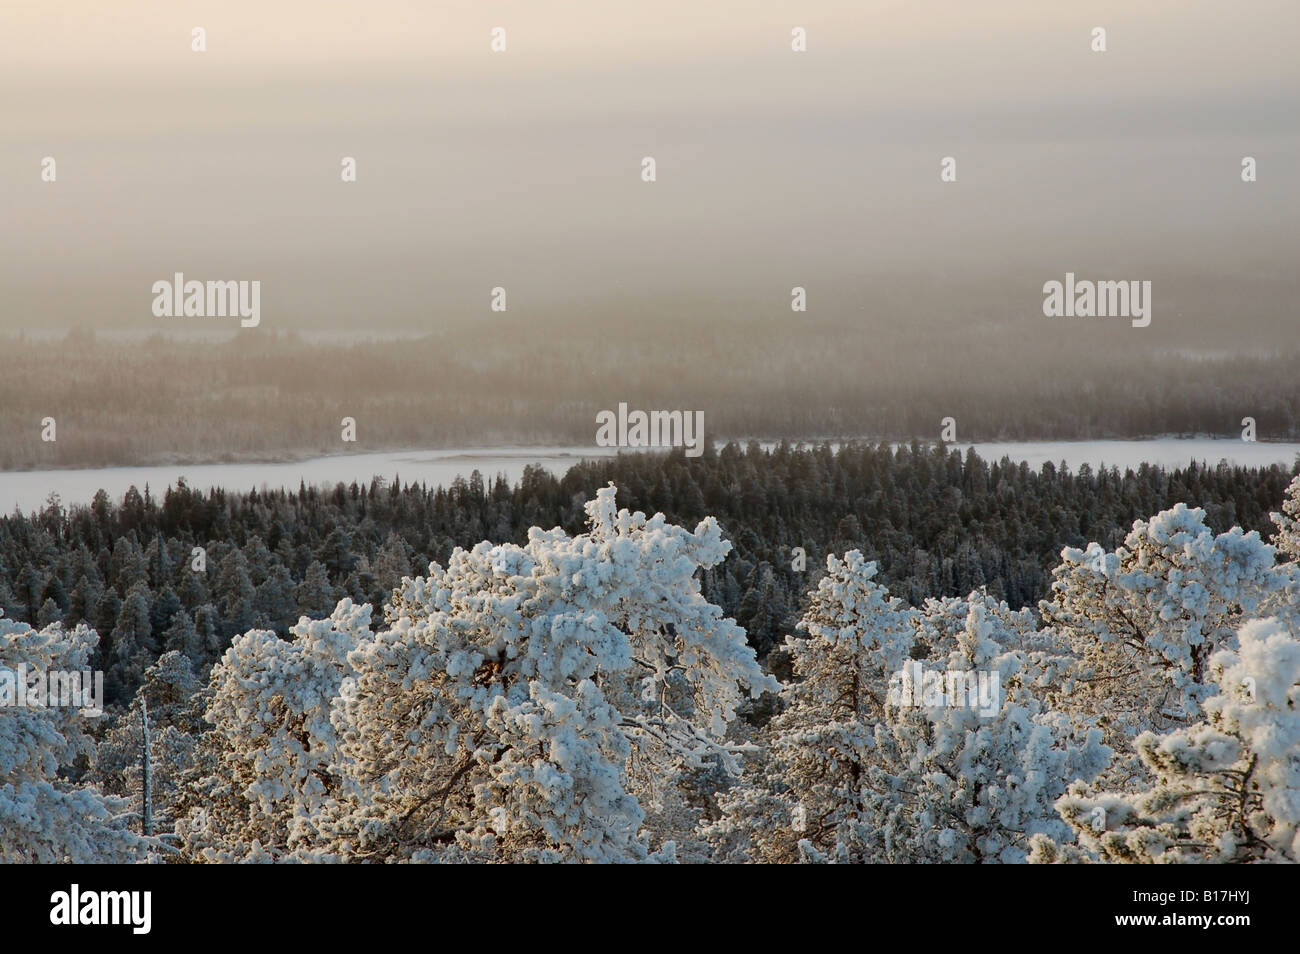 Vista desde la cima de la colina con bosques Vaattunkivaara invernal en el Círculo Polar Ártico el senderismo, Rovaniemi, Laponia finlandesa Foto de stock